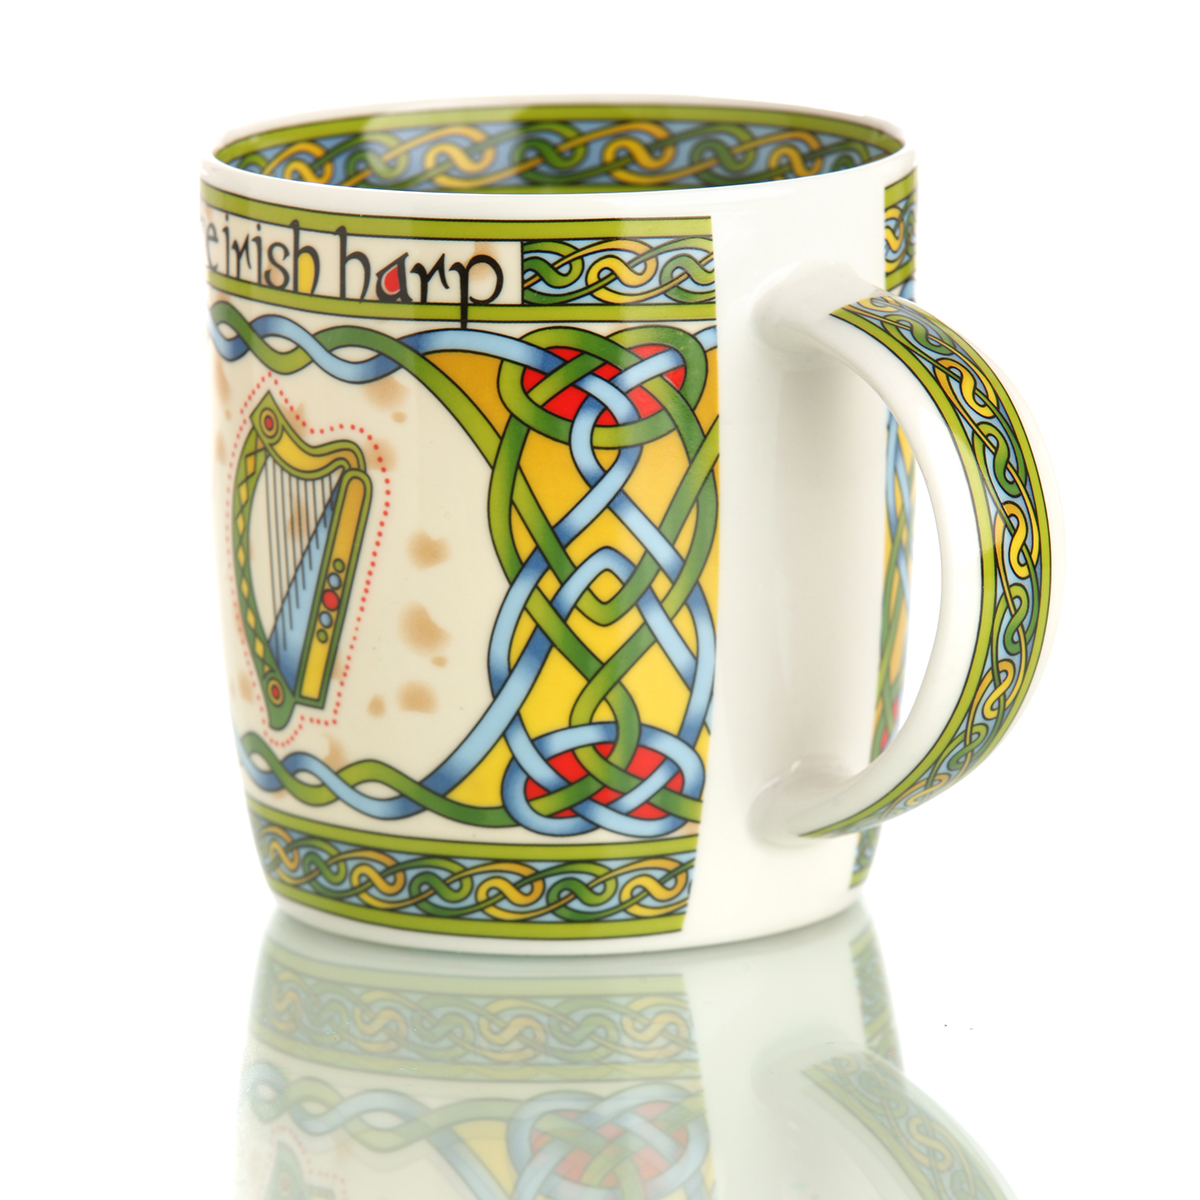 The Irish Harp Mug - Kaffeebecher mit irischer Harfe & keltischem Muster